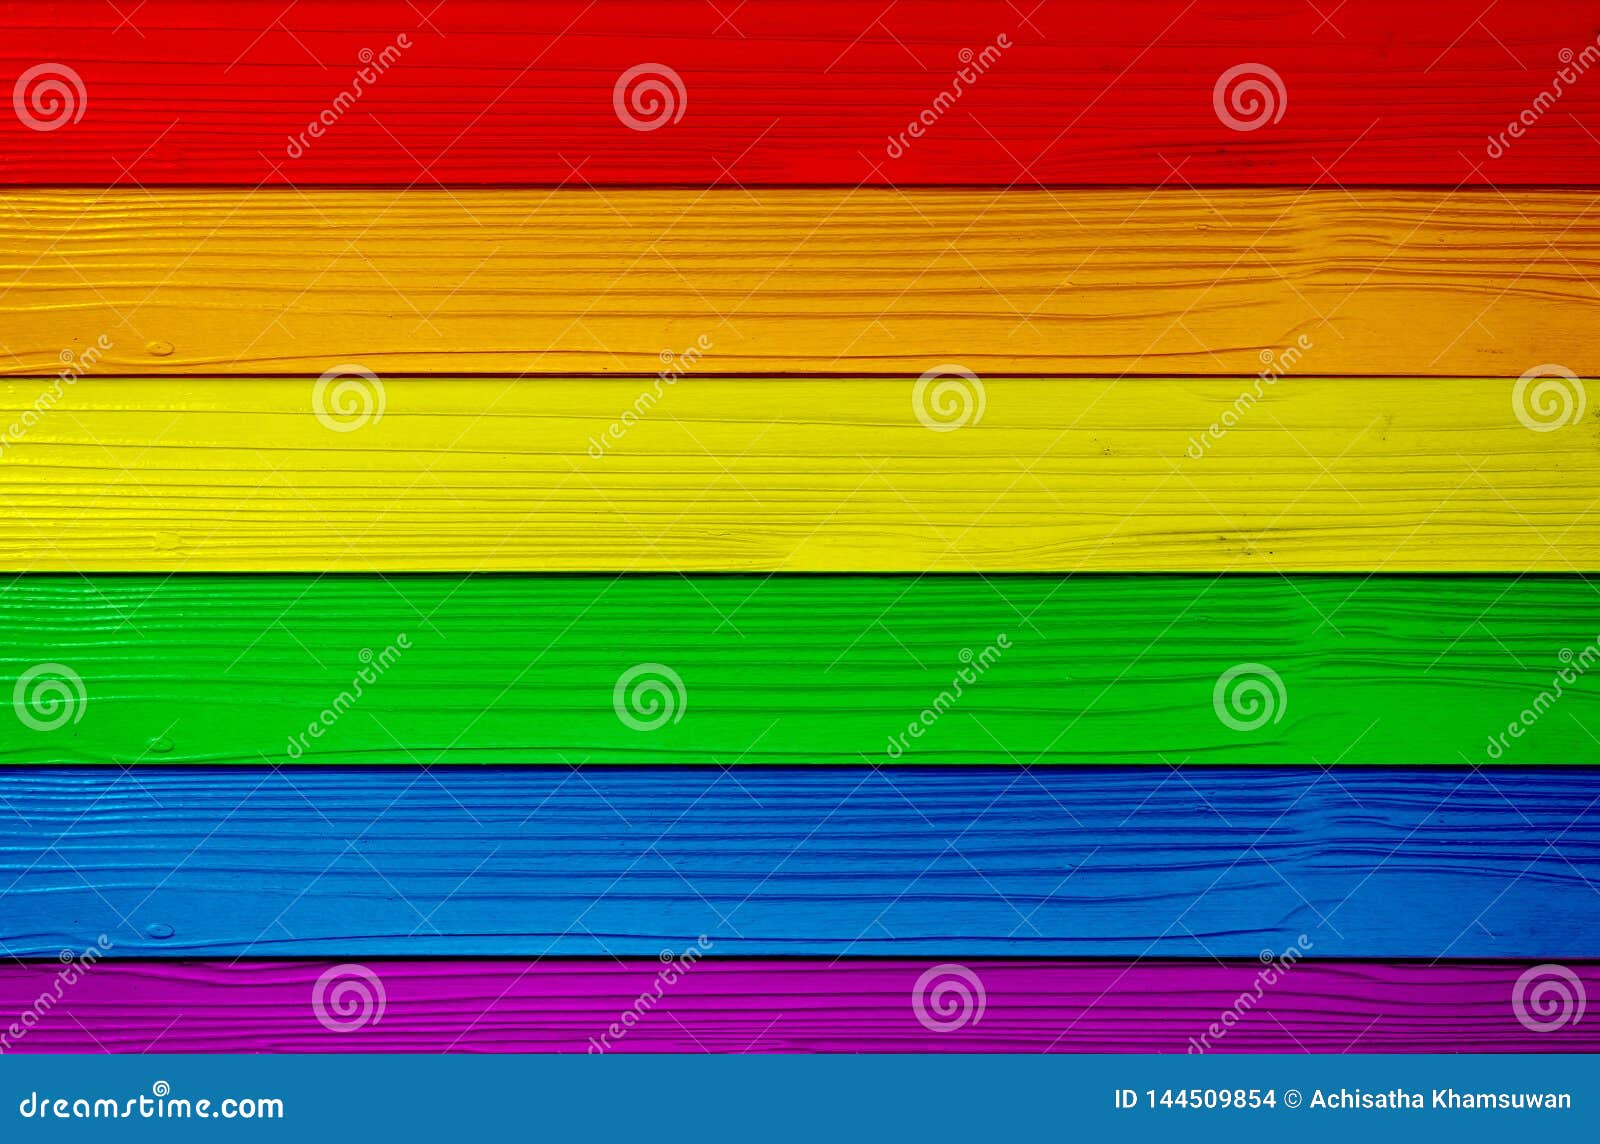 Những thông điệp về sự đa dạng và ấn tượng của cộng đồng LGBTQ+ được thể hiện một cách sáng tạo trên những tấm nền gỗ. Những màu sắc mang đến cảm hứng cho sự đồng tình và hỗ trợ đầy mạnh mẽ.